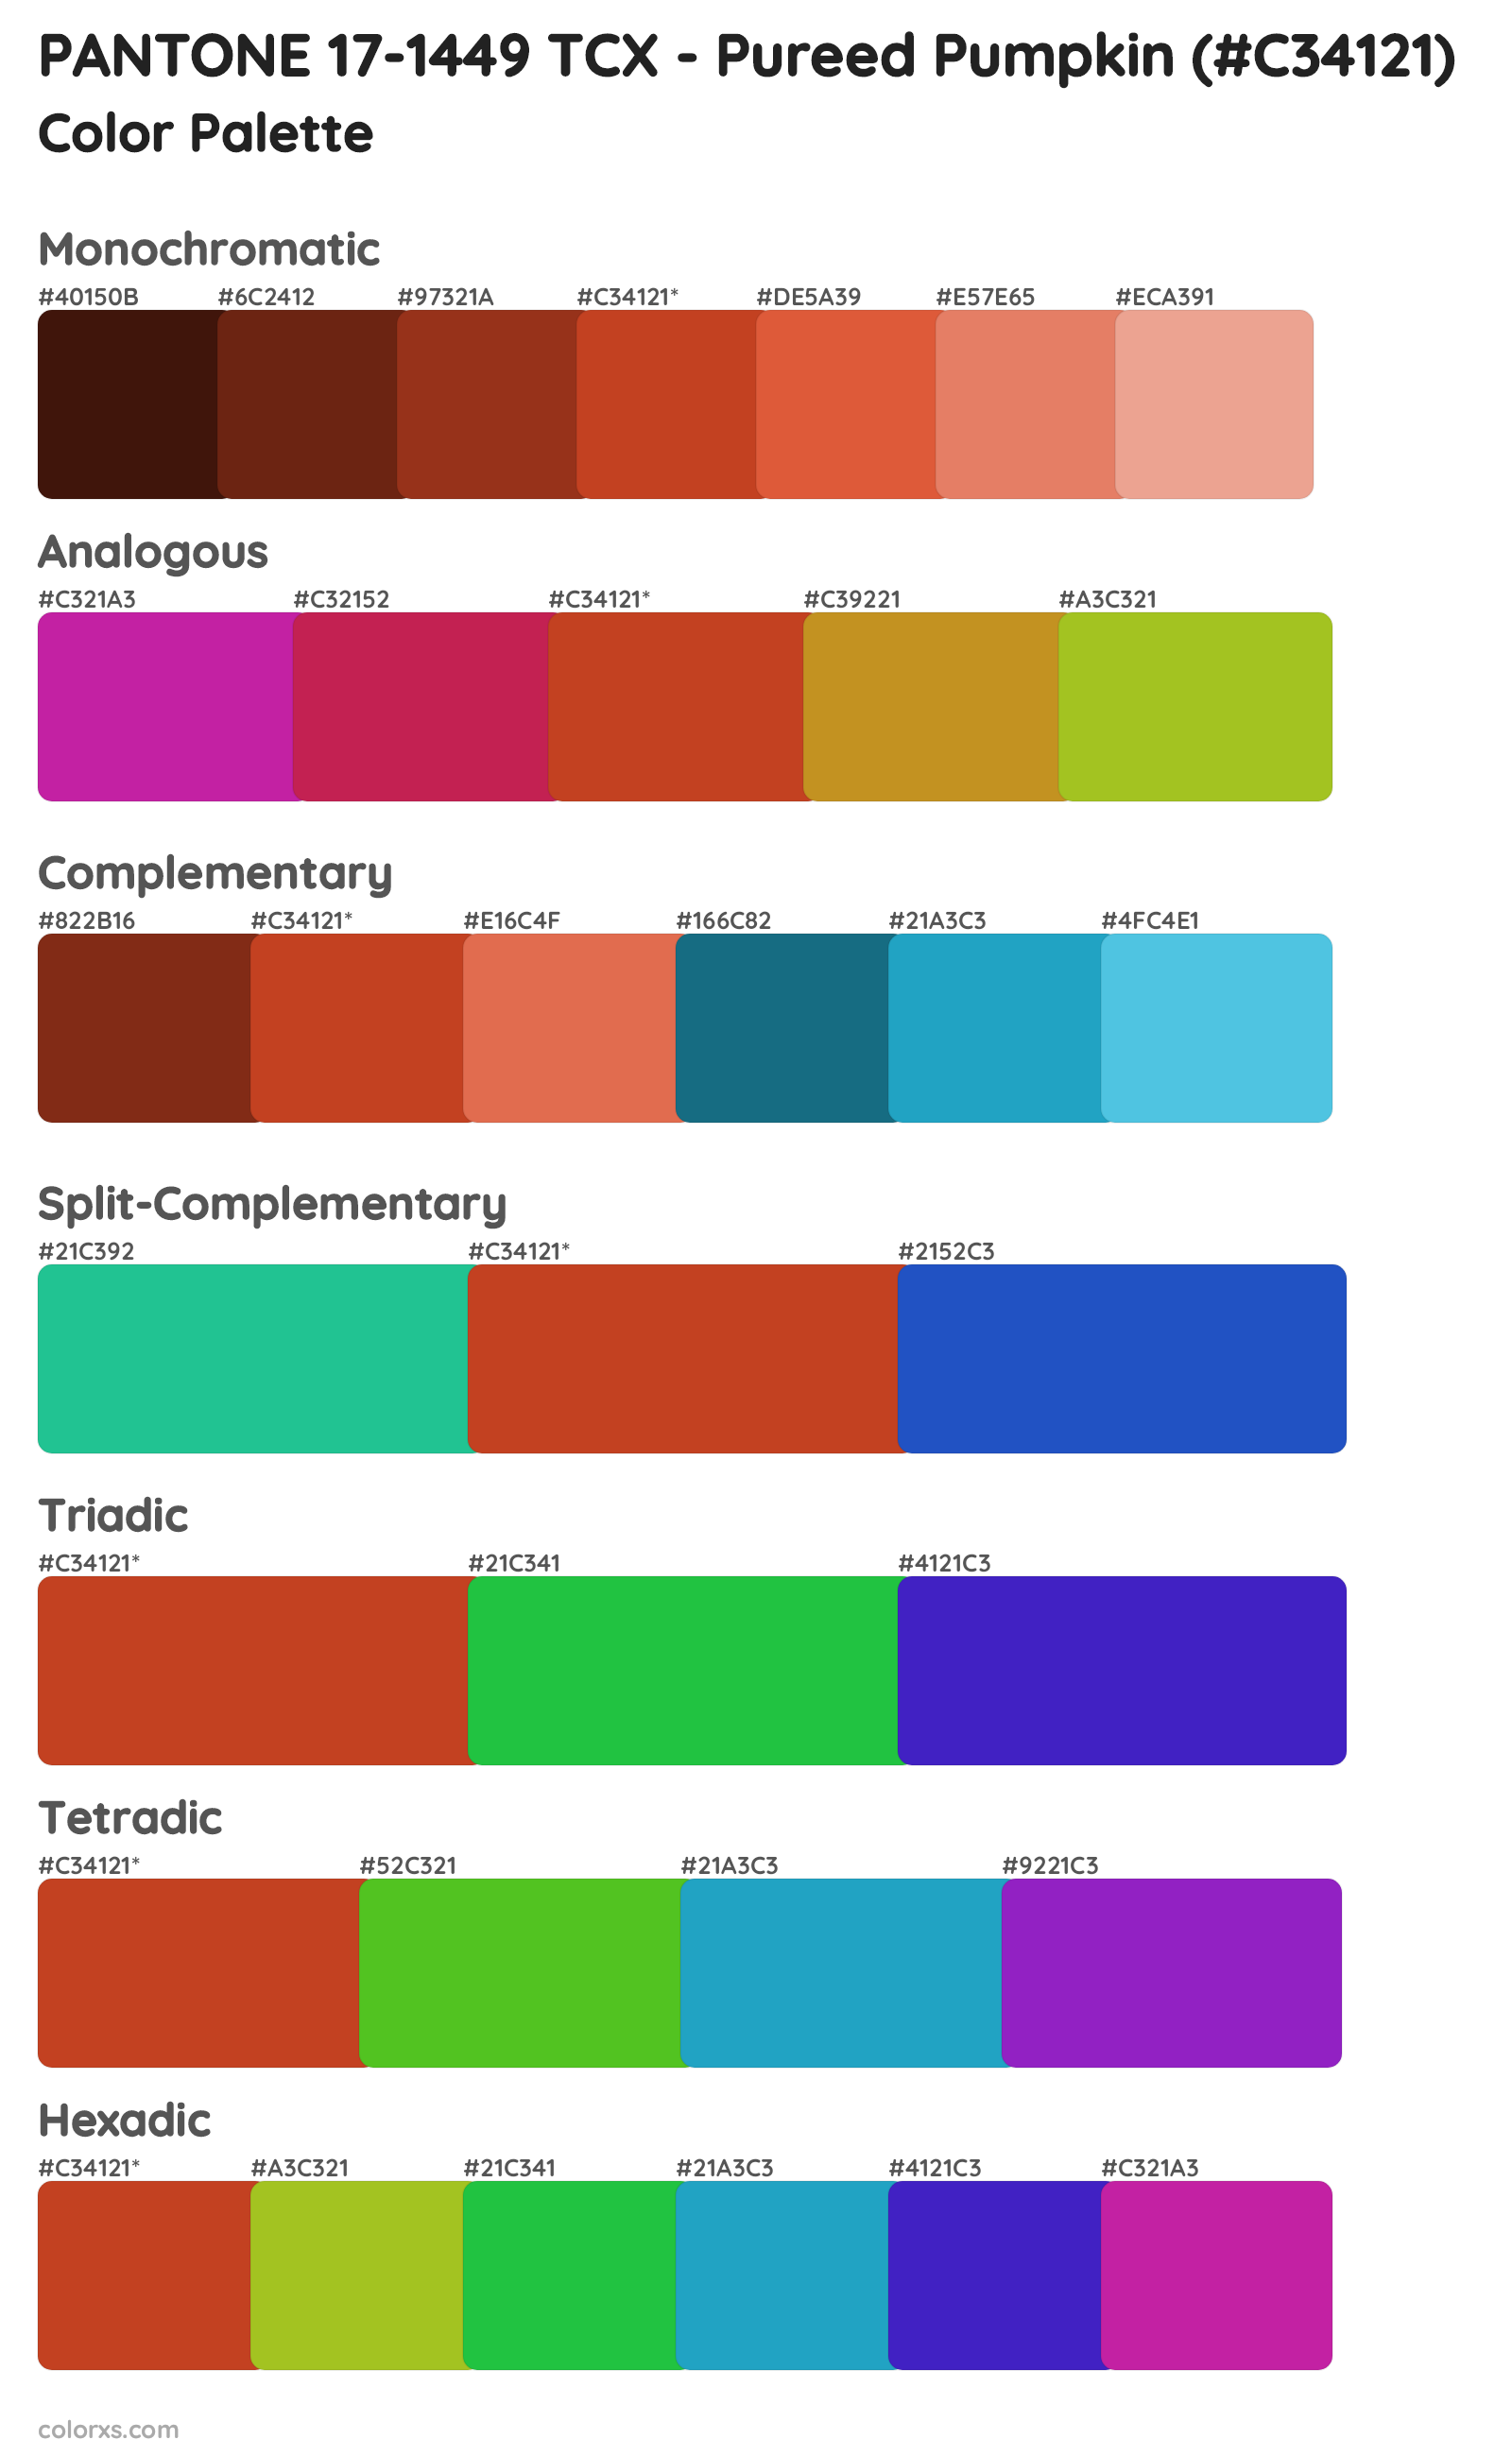 PANTONE 17-1449 TCX - Pureed Pumpkin Color Scheme Palettes